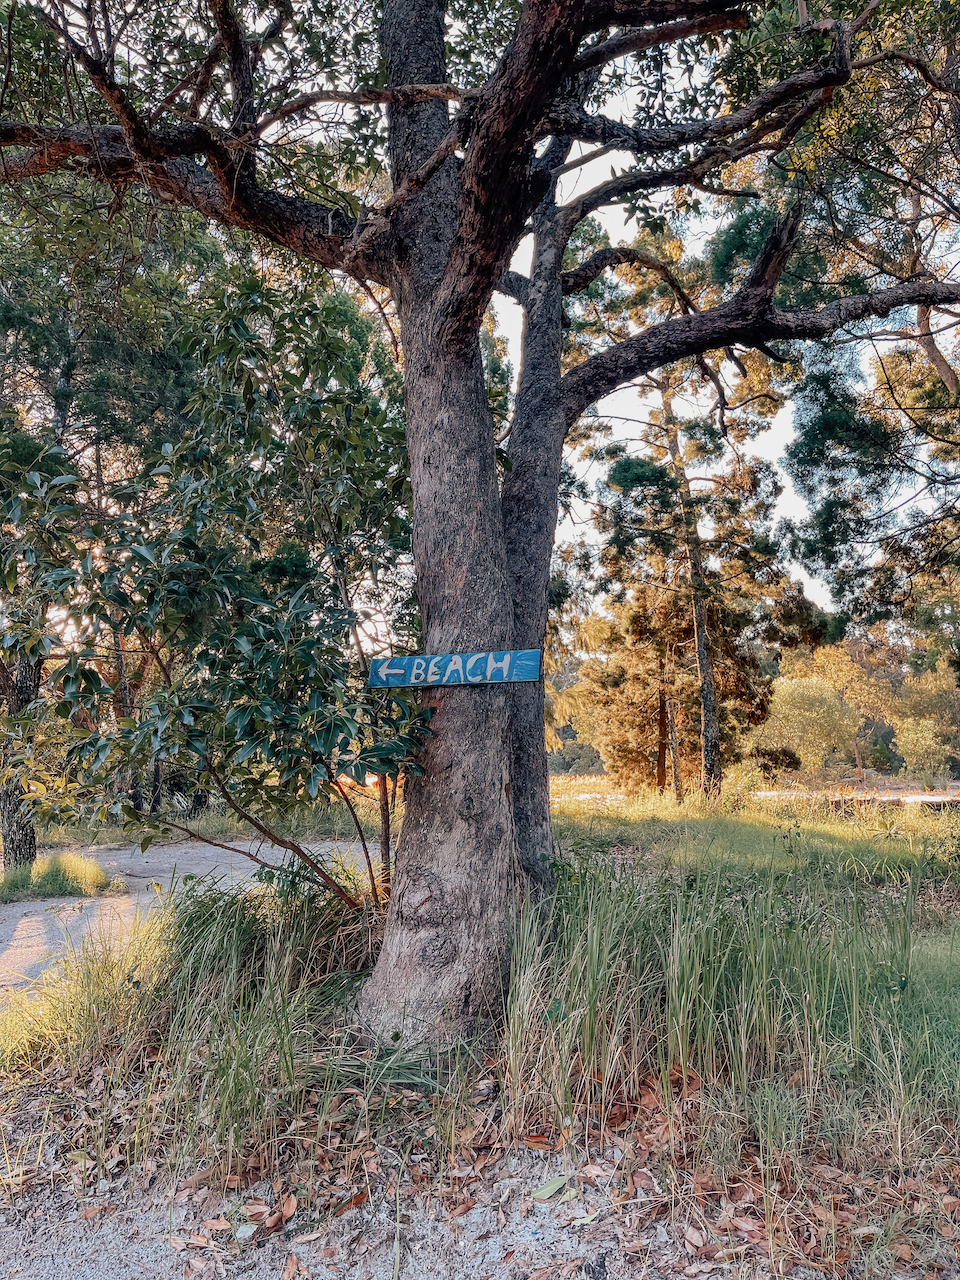 Panneau indiquant la plage - Île de Moreton - Queensland - Australie